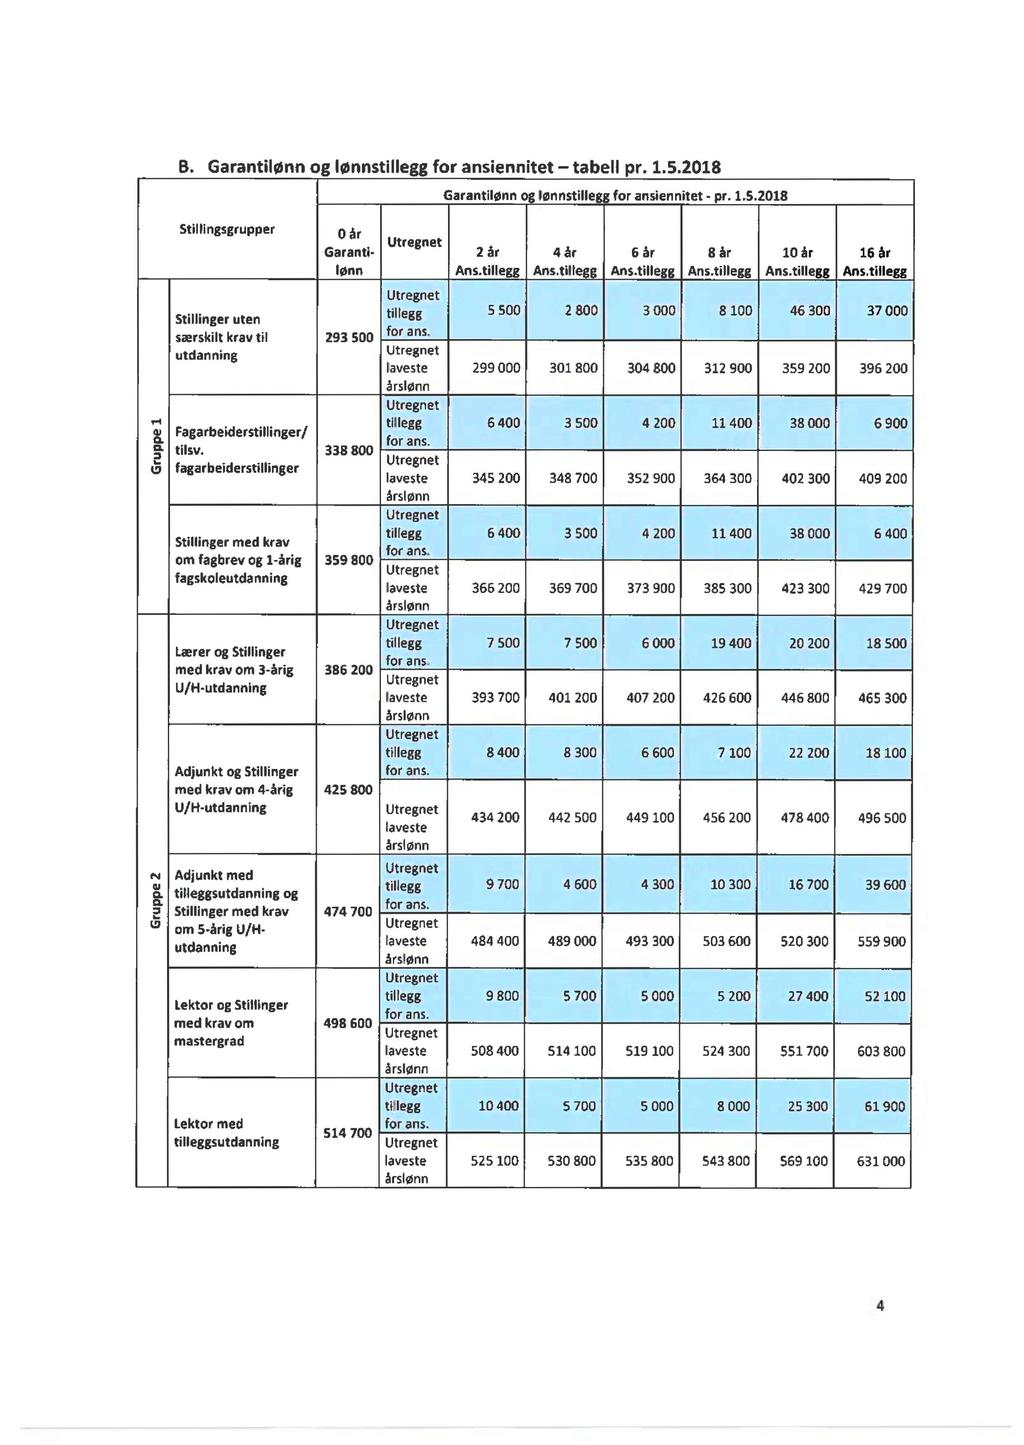 B. Garantilønn og lønnstillegg for ansiennitet - tabell pr. 1.5.2018 Stillingsgrupper Stillinger uten særskilt krav til utdanning 0 år Garantilønn 293 500 tillegg for ans.